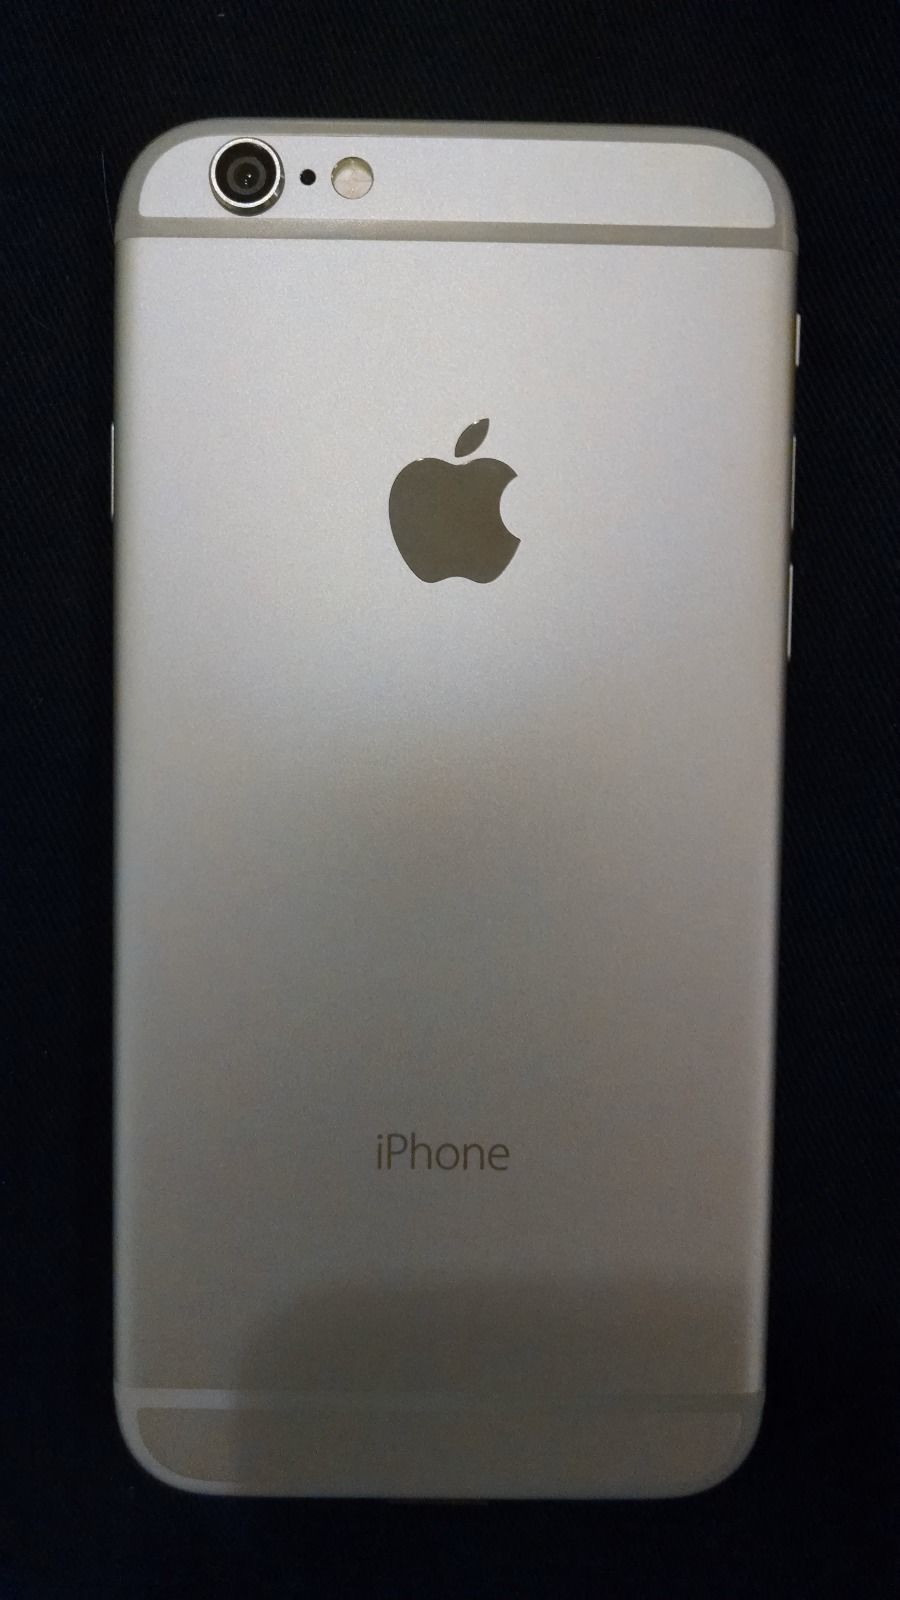 iPhone 6 prototype eBay 2